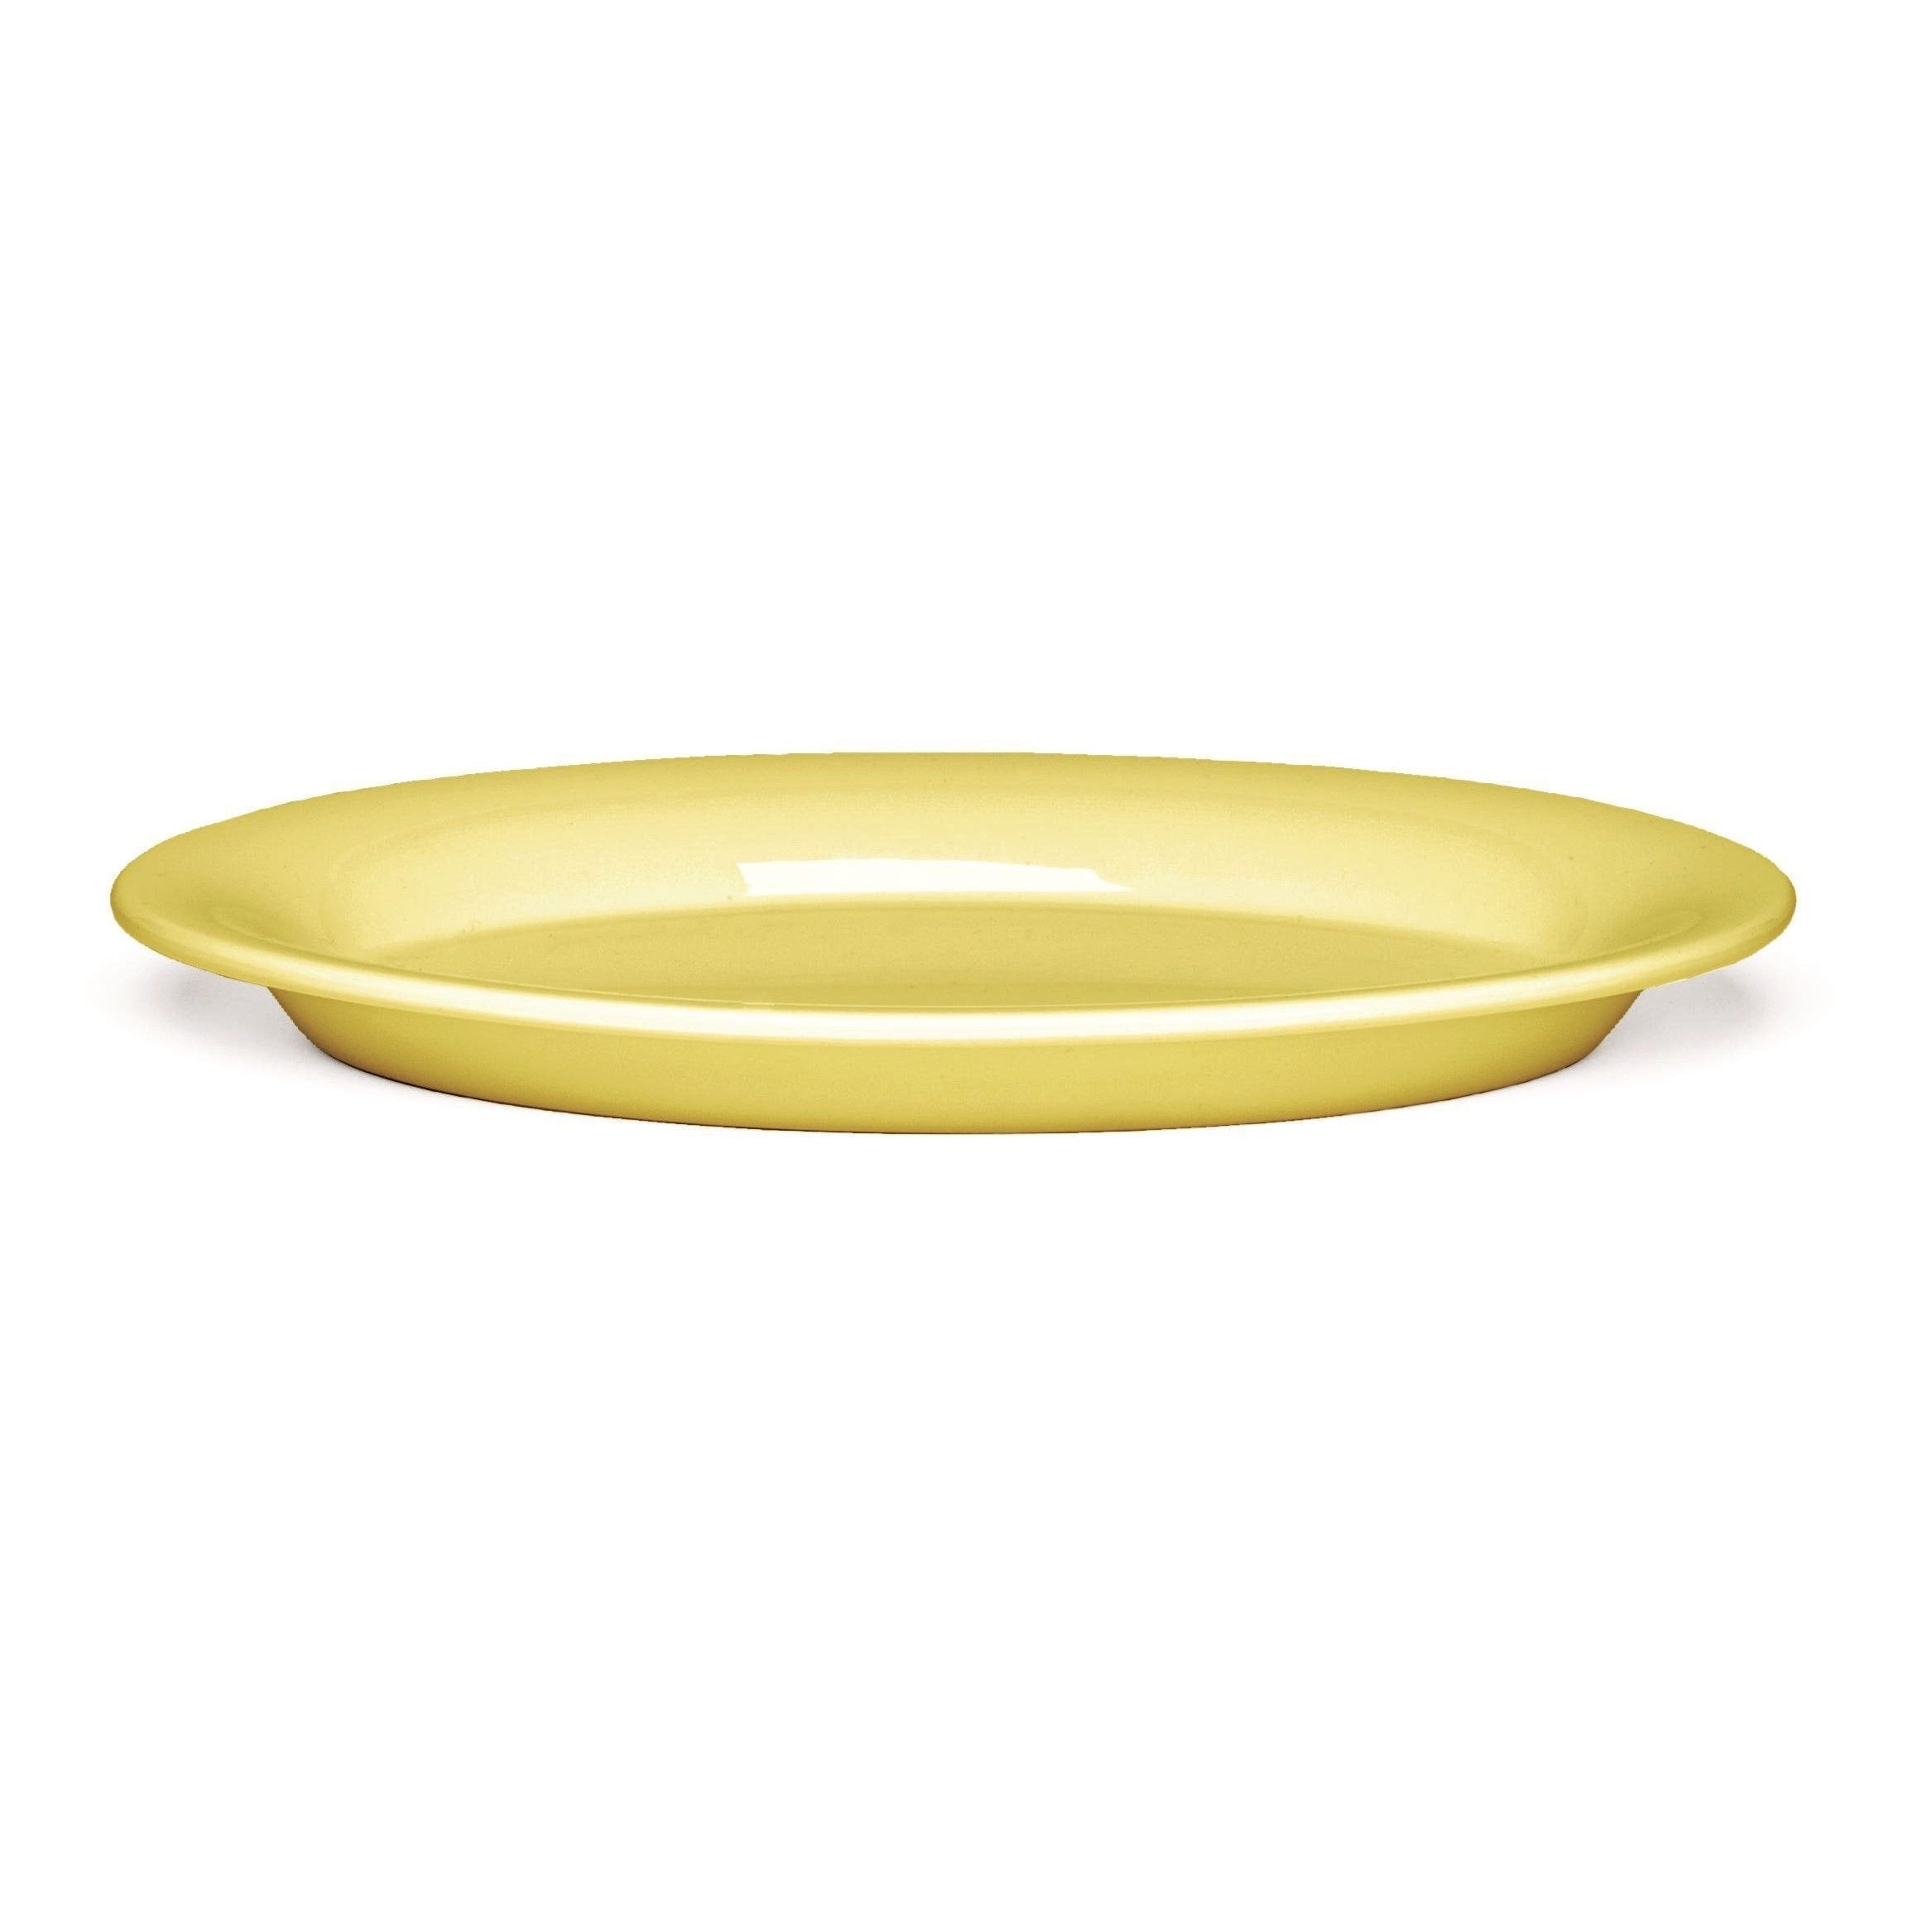 Kähler Ursula Plate amarillo, Ø28 cm